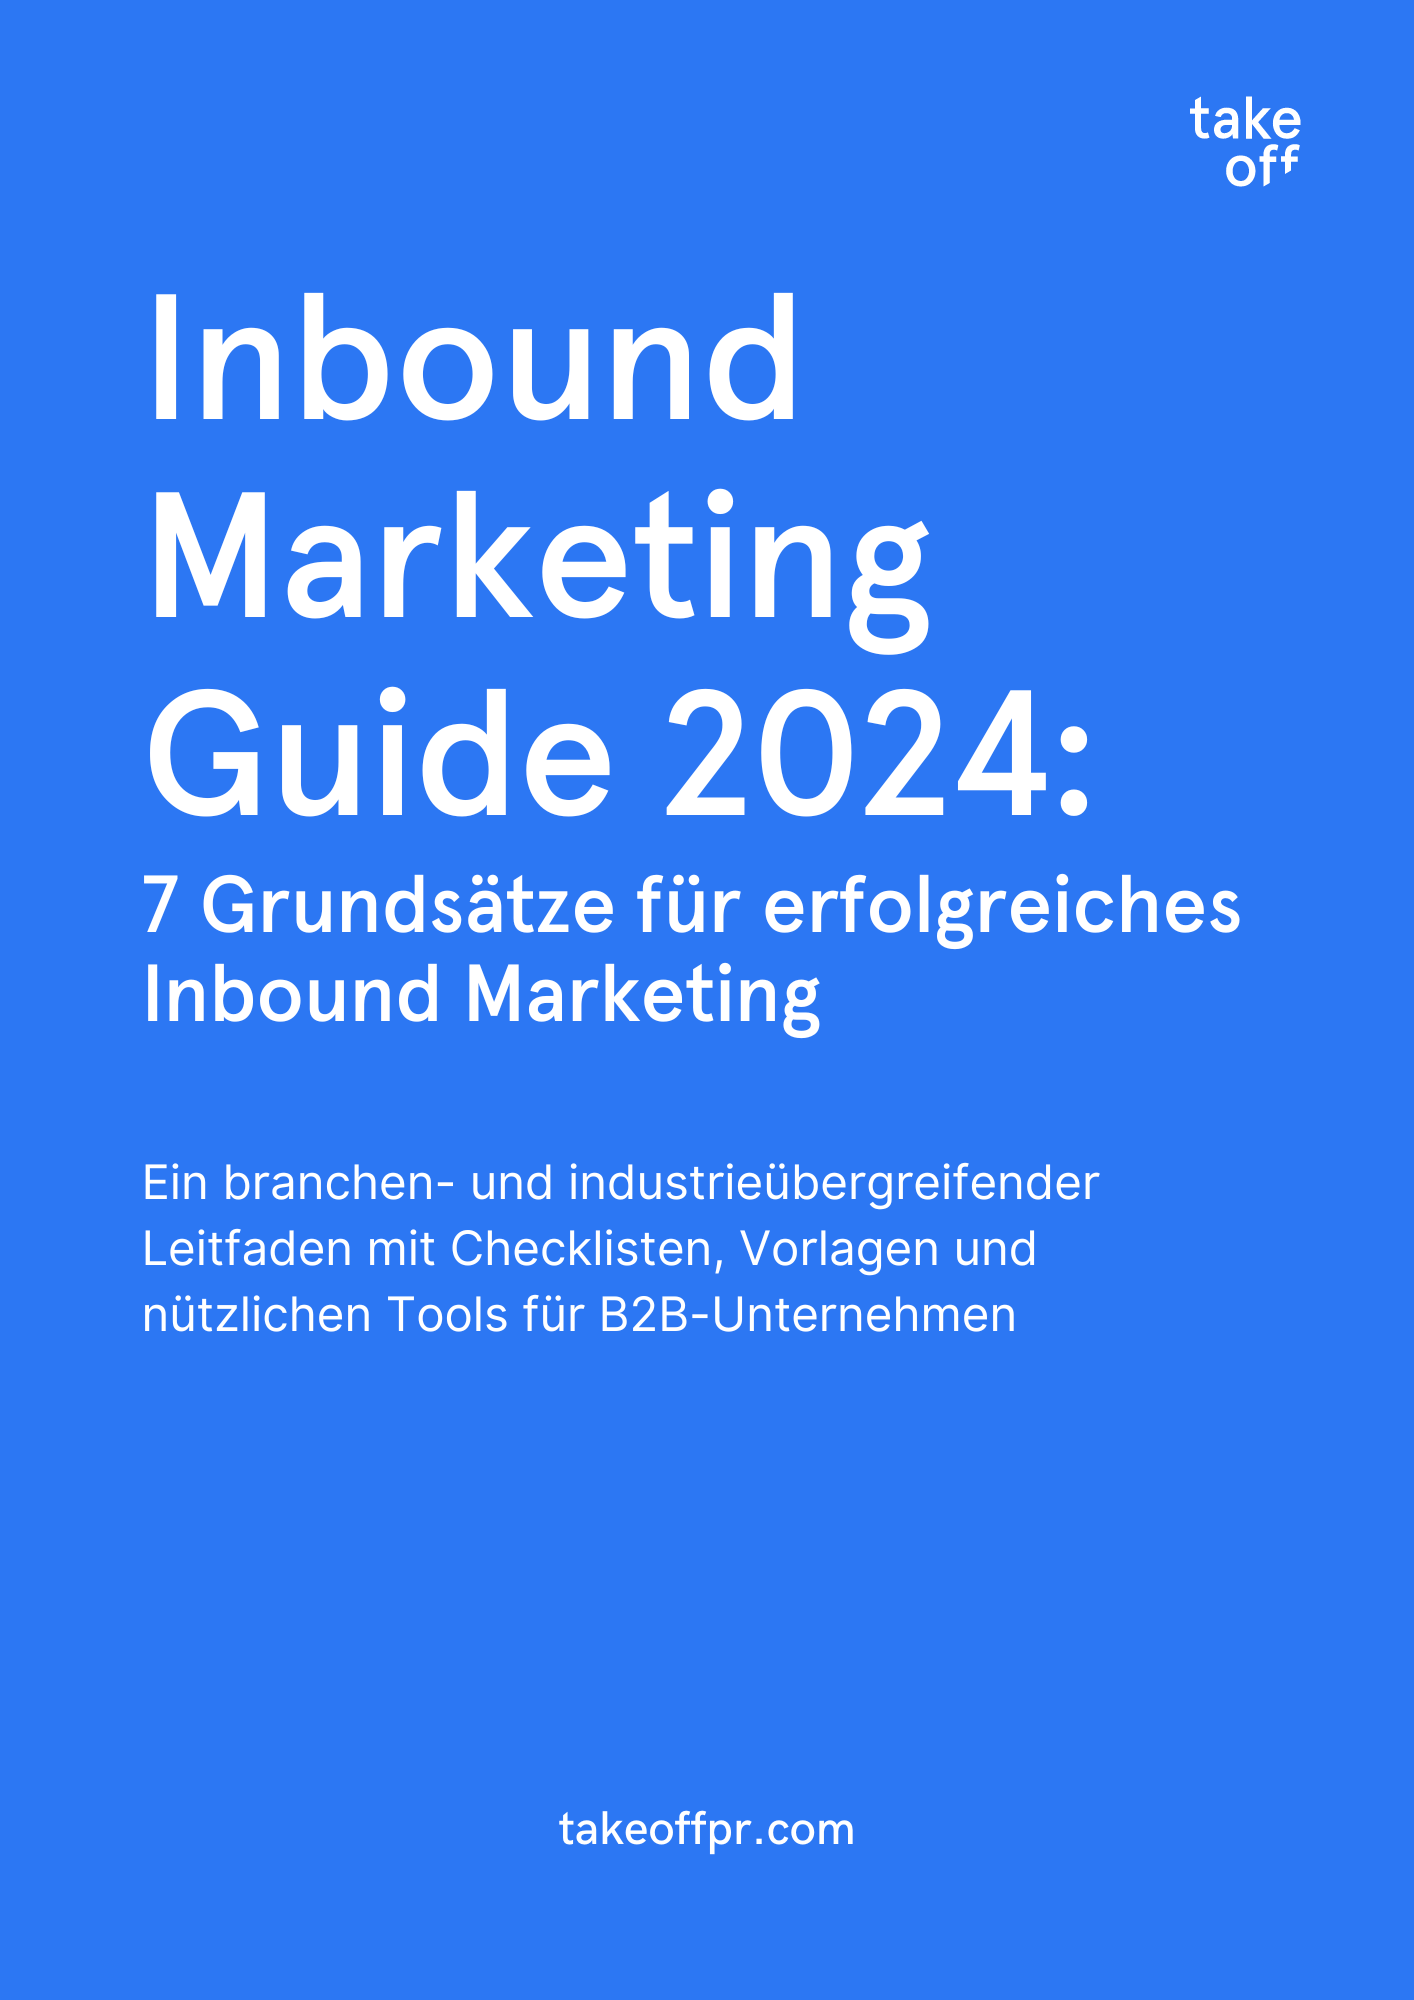 Inbound Marketing Guide 2024 7 Grundsätze für erfolgreiches Inbound Marketing (3)